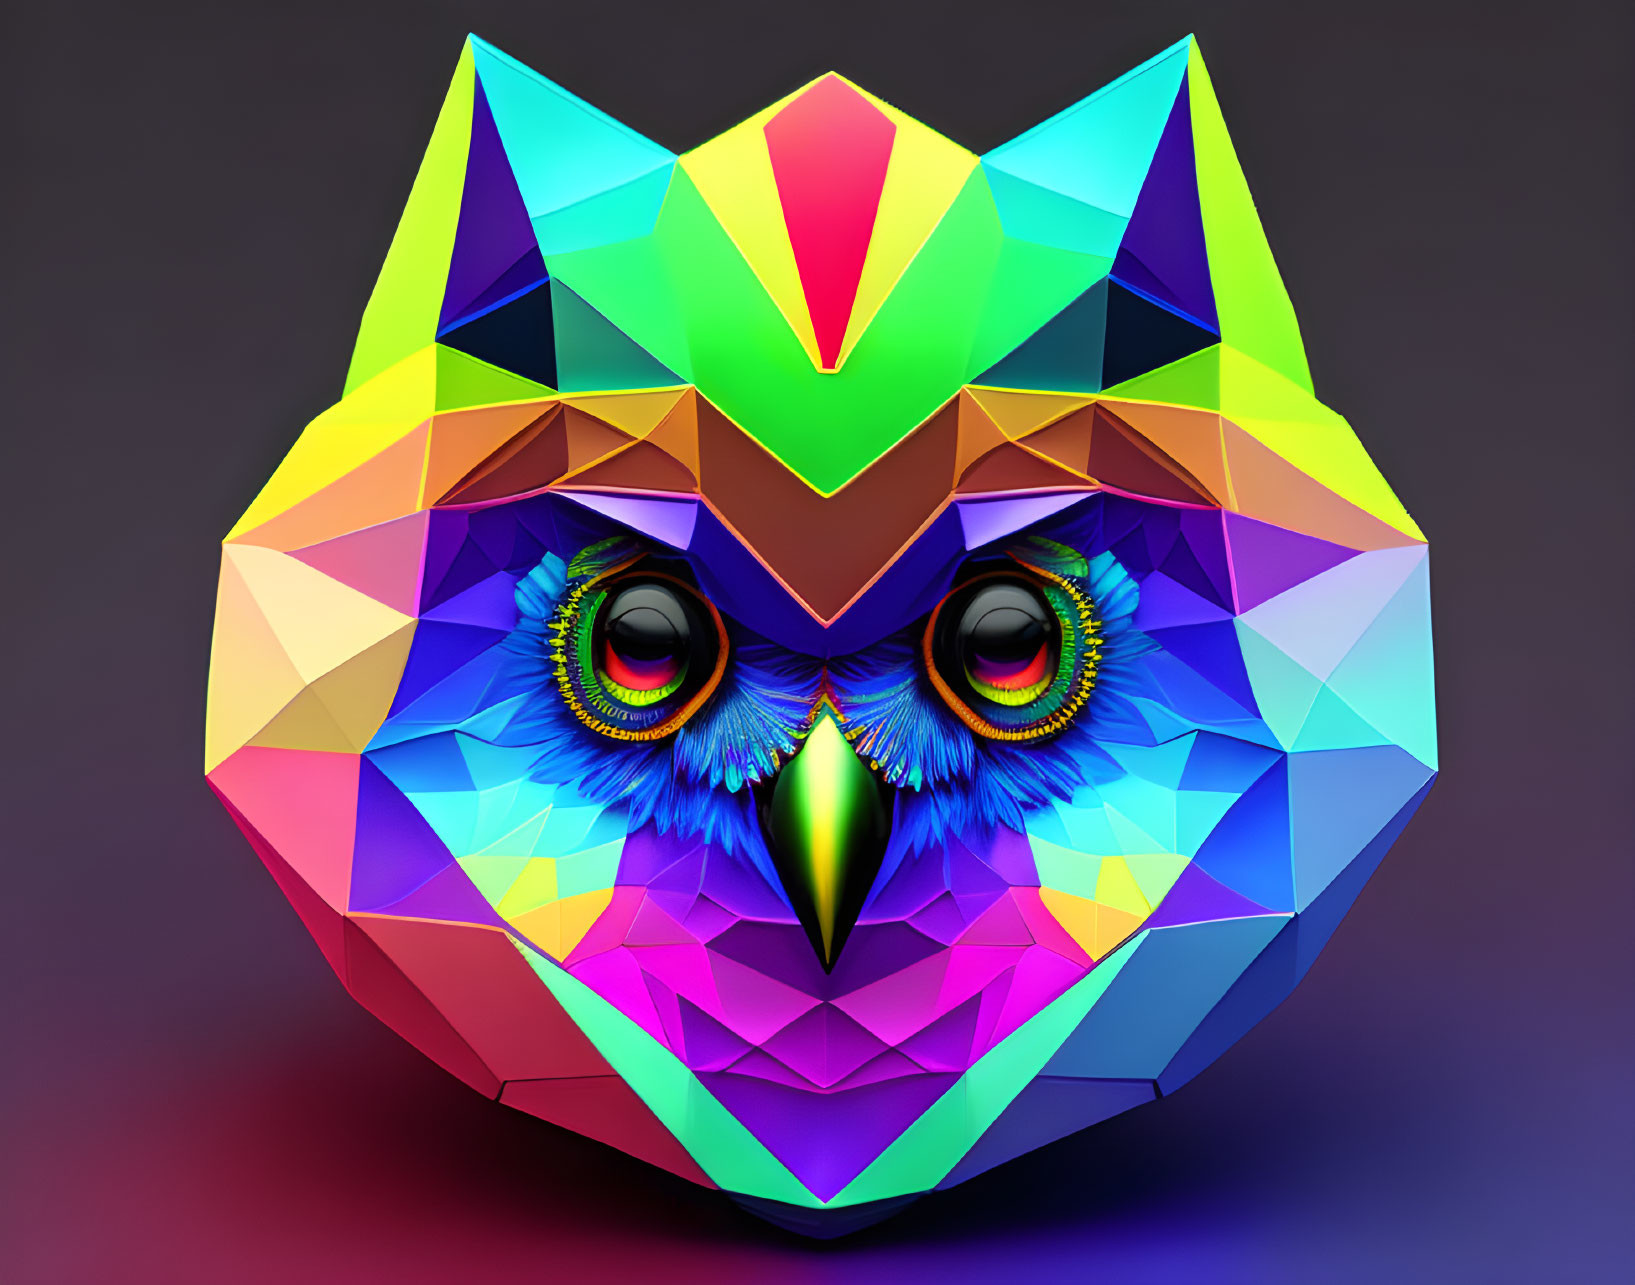 Vibrant geometric owl face with rainbow-hued eyes